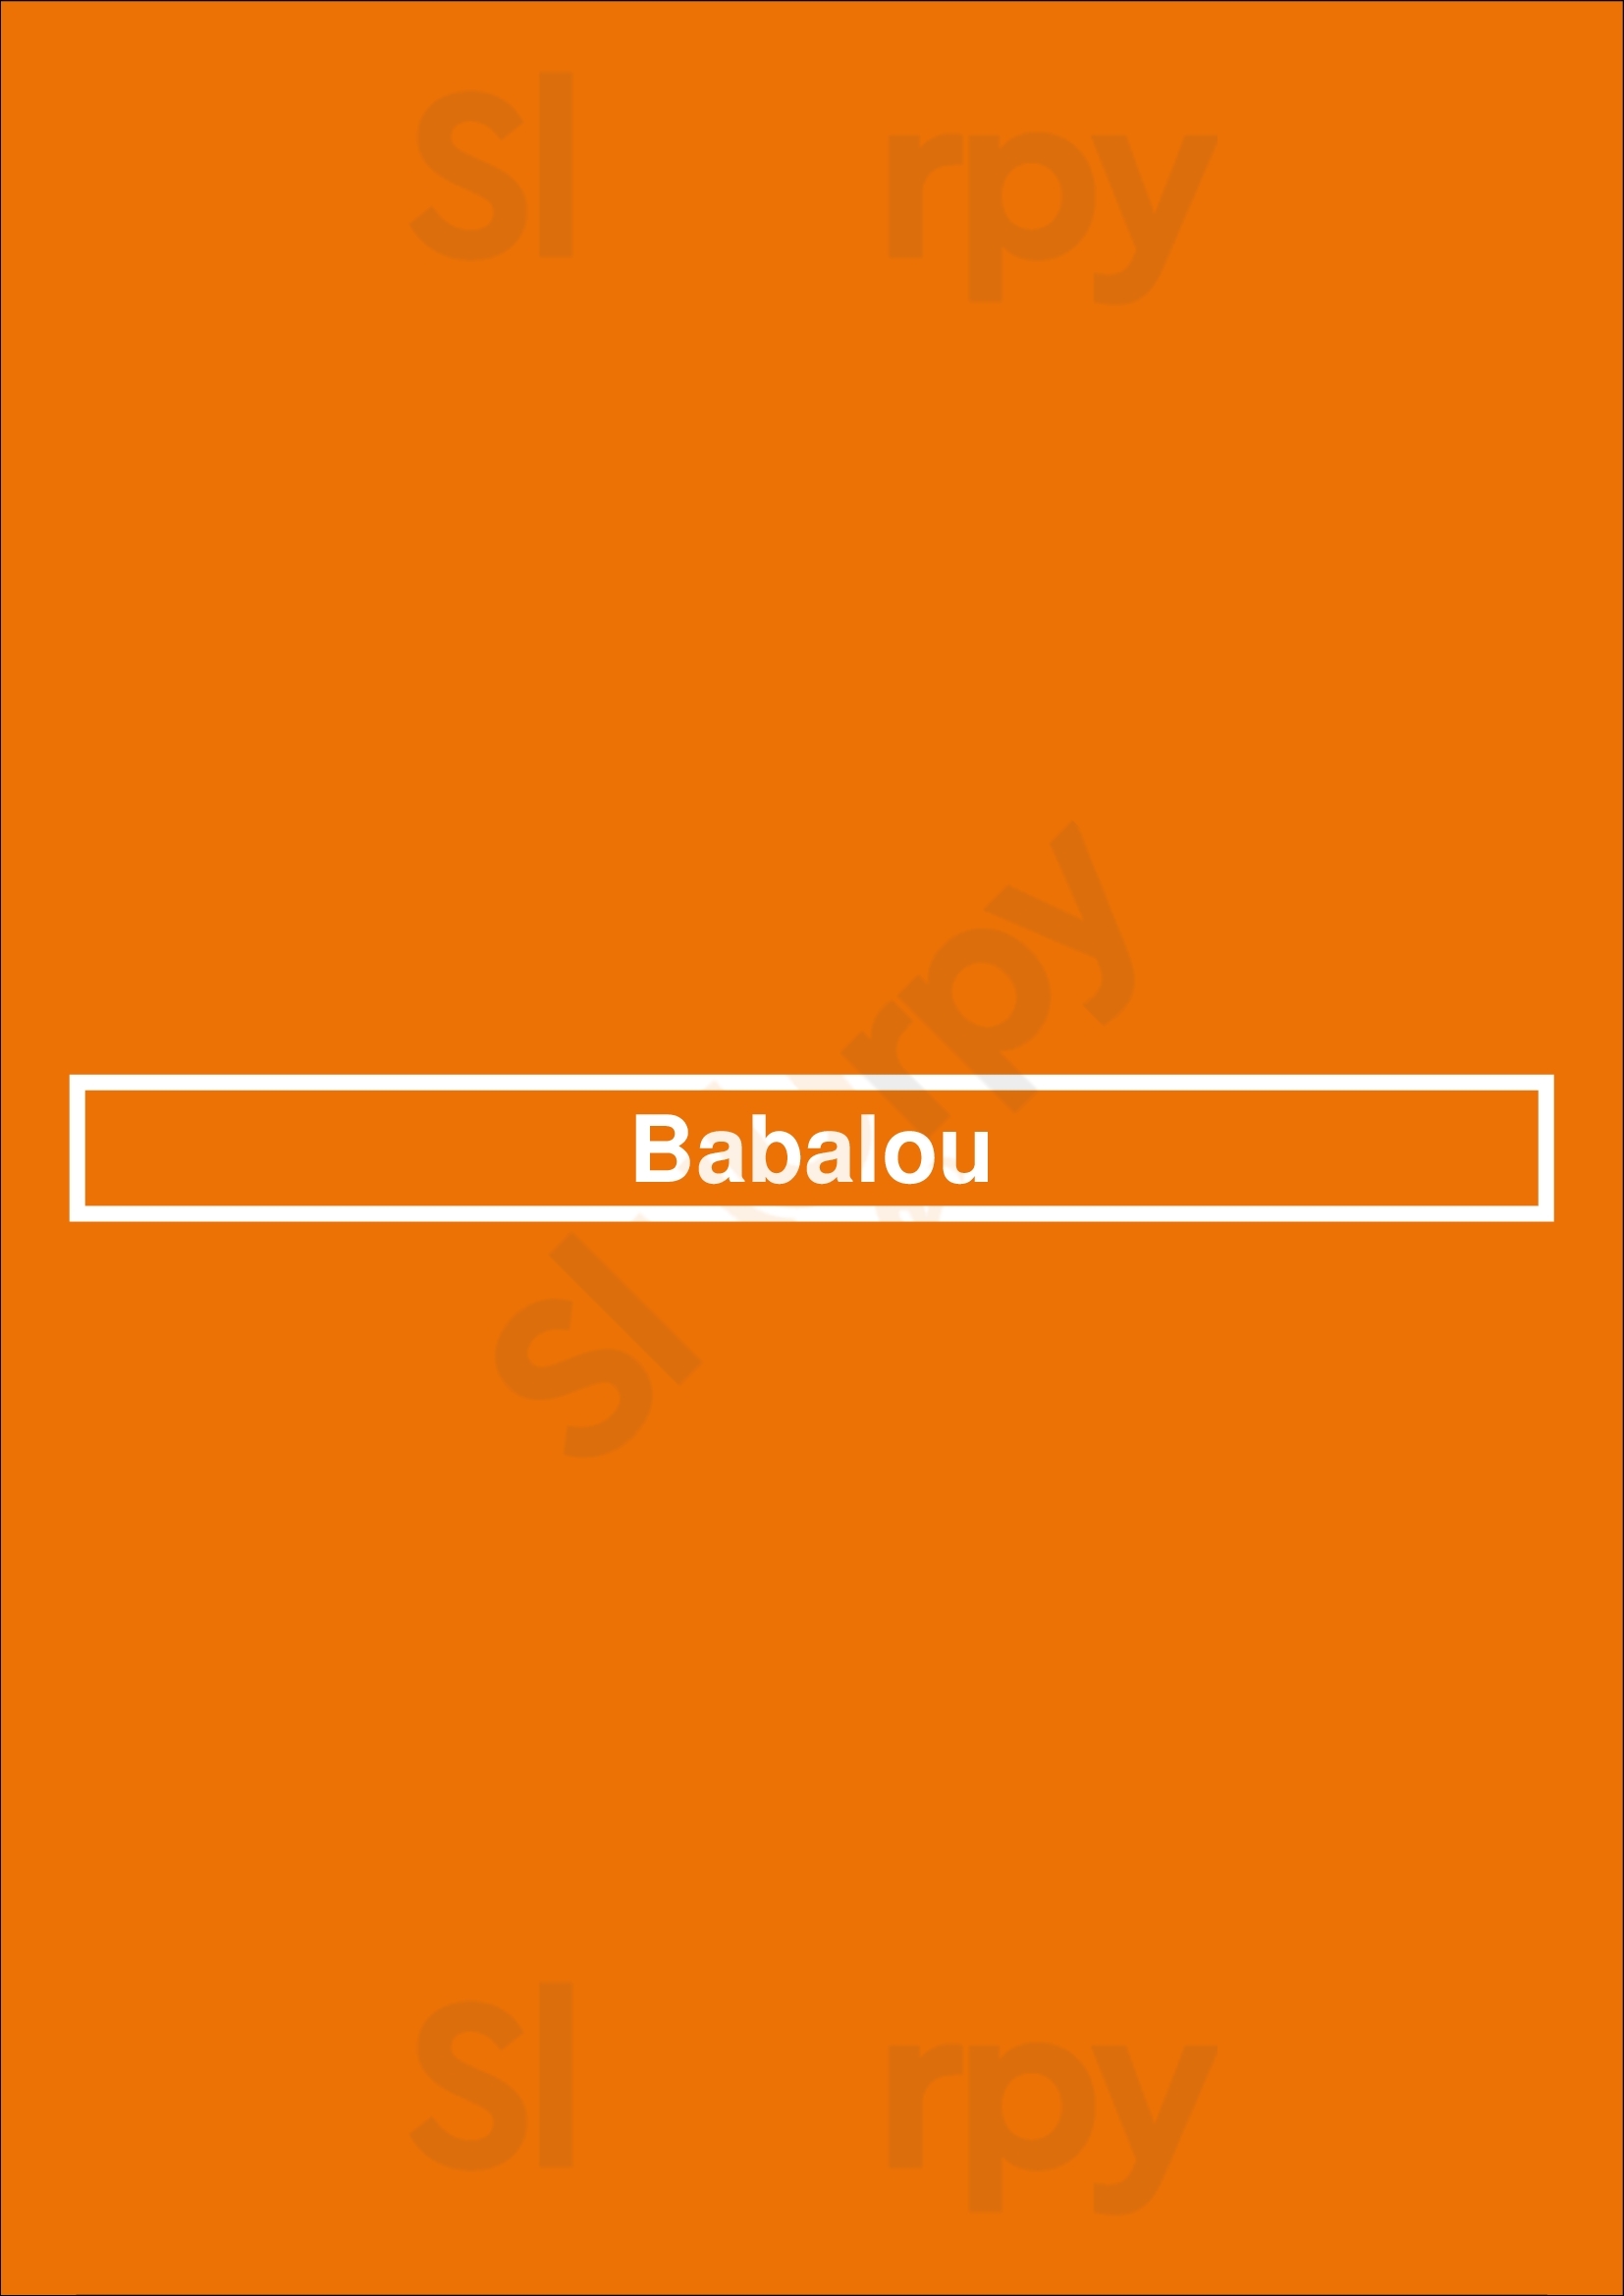 Babalou Paris Menu - 1